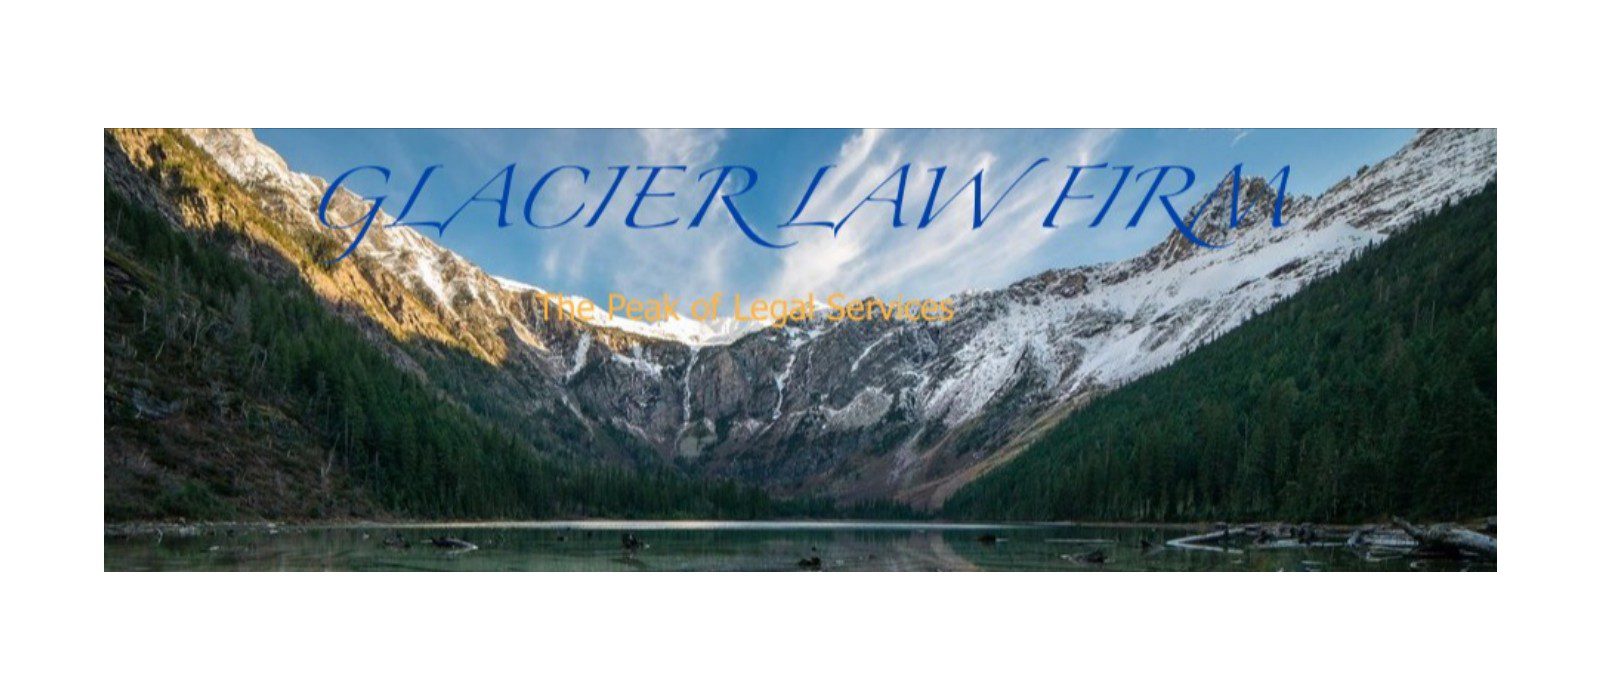 Glacier Law Firm Cover 3